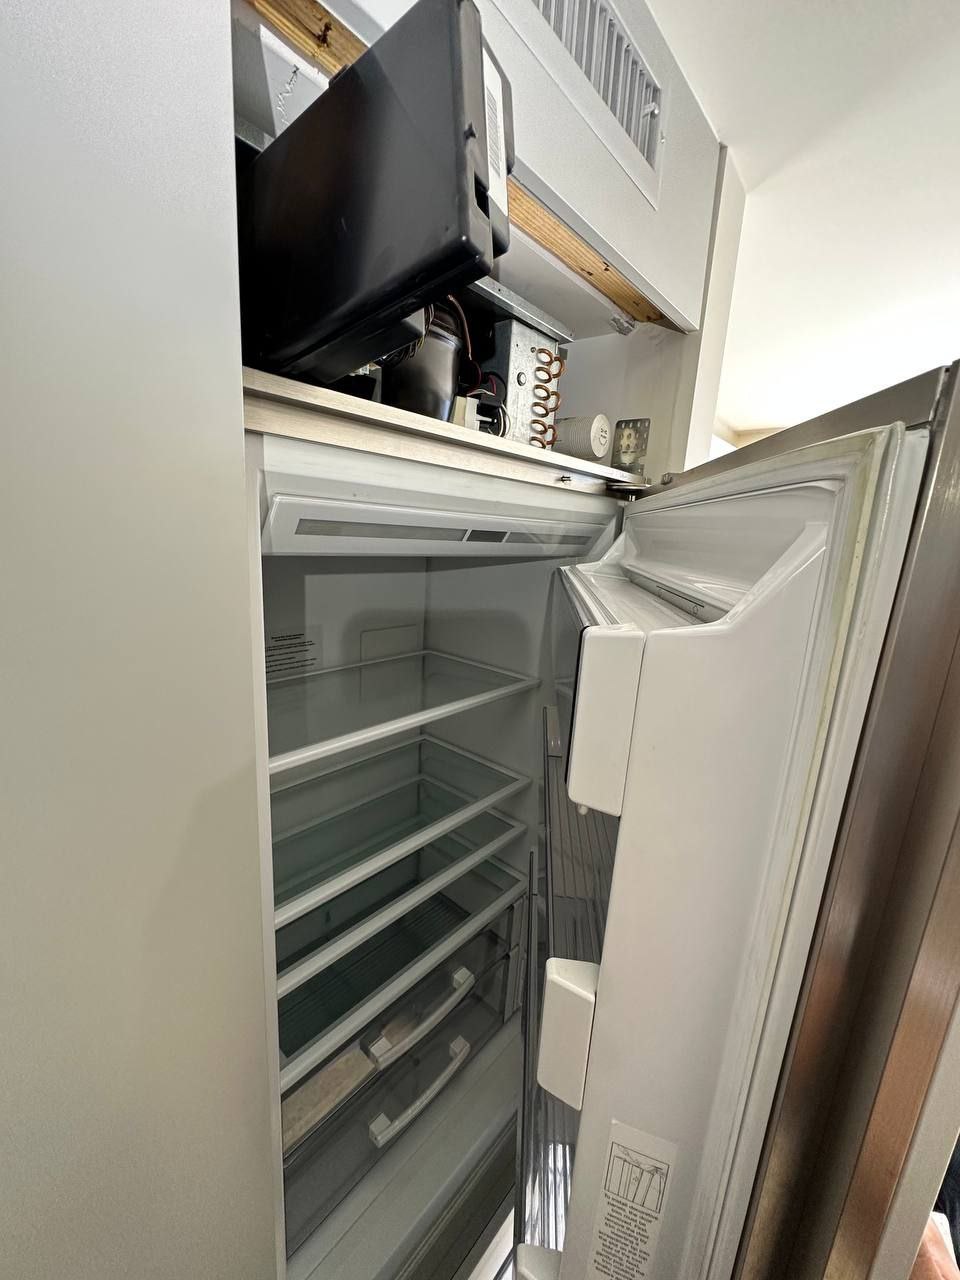 Refrigerator Sub-Zero Repair